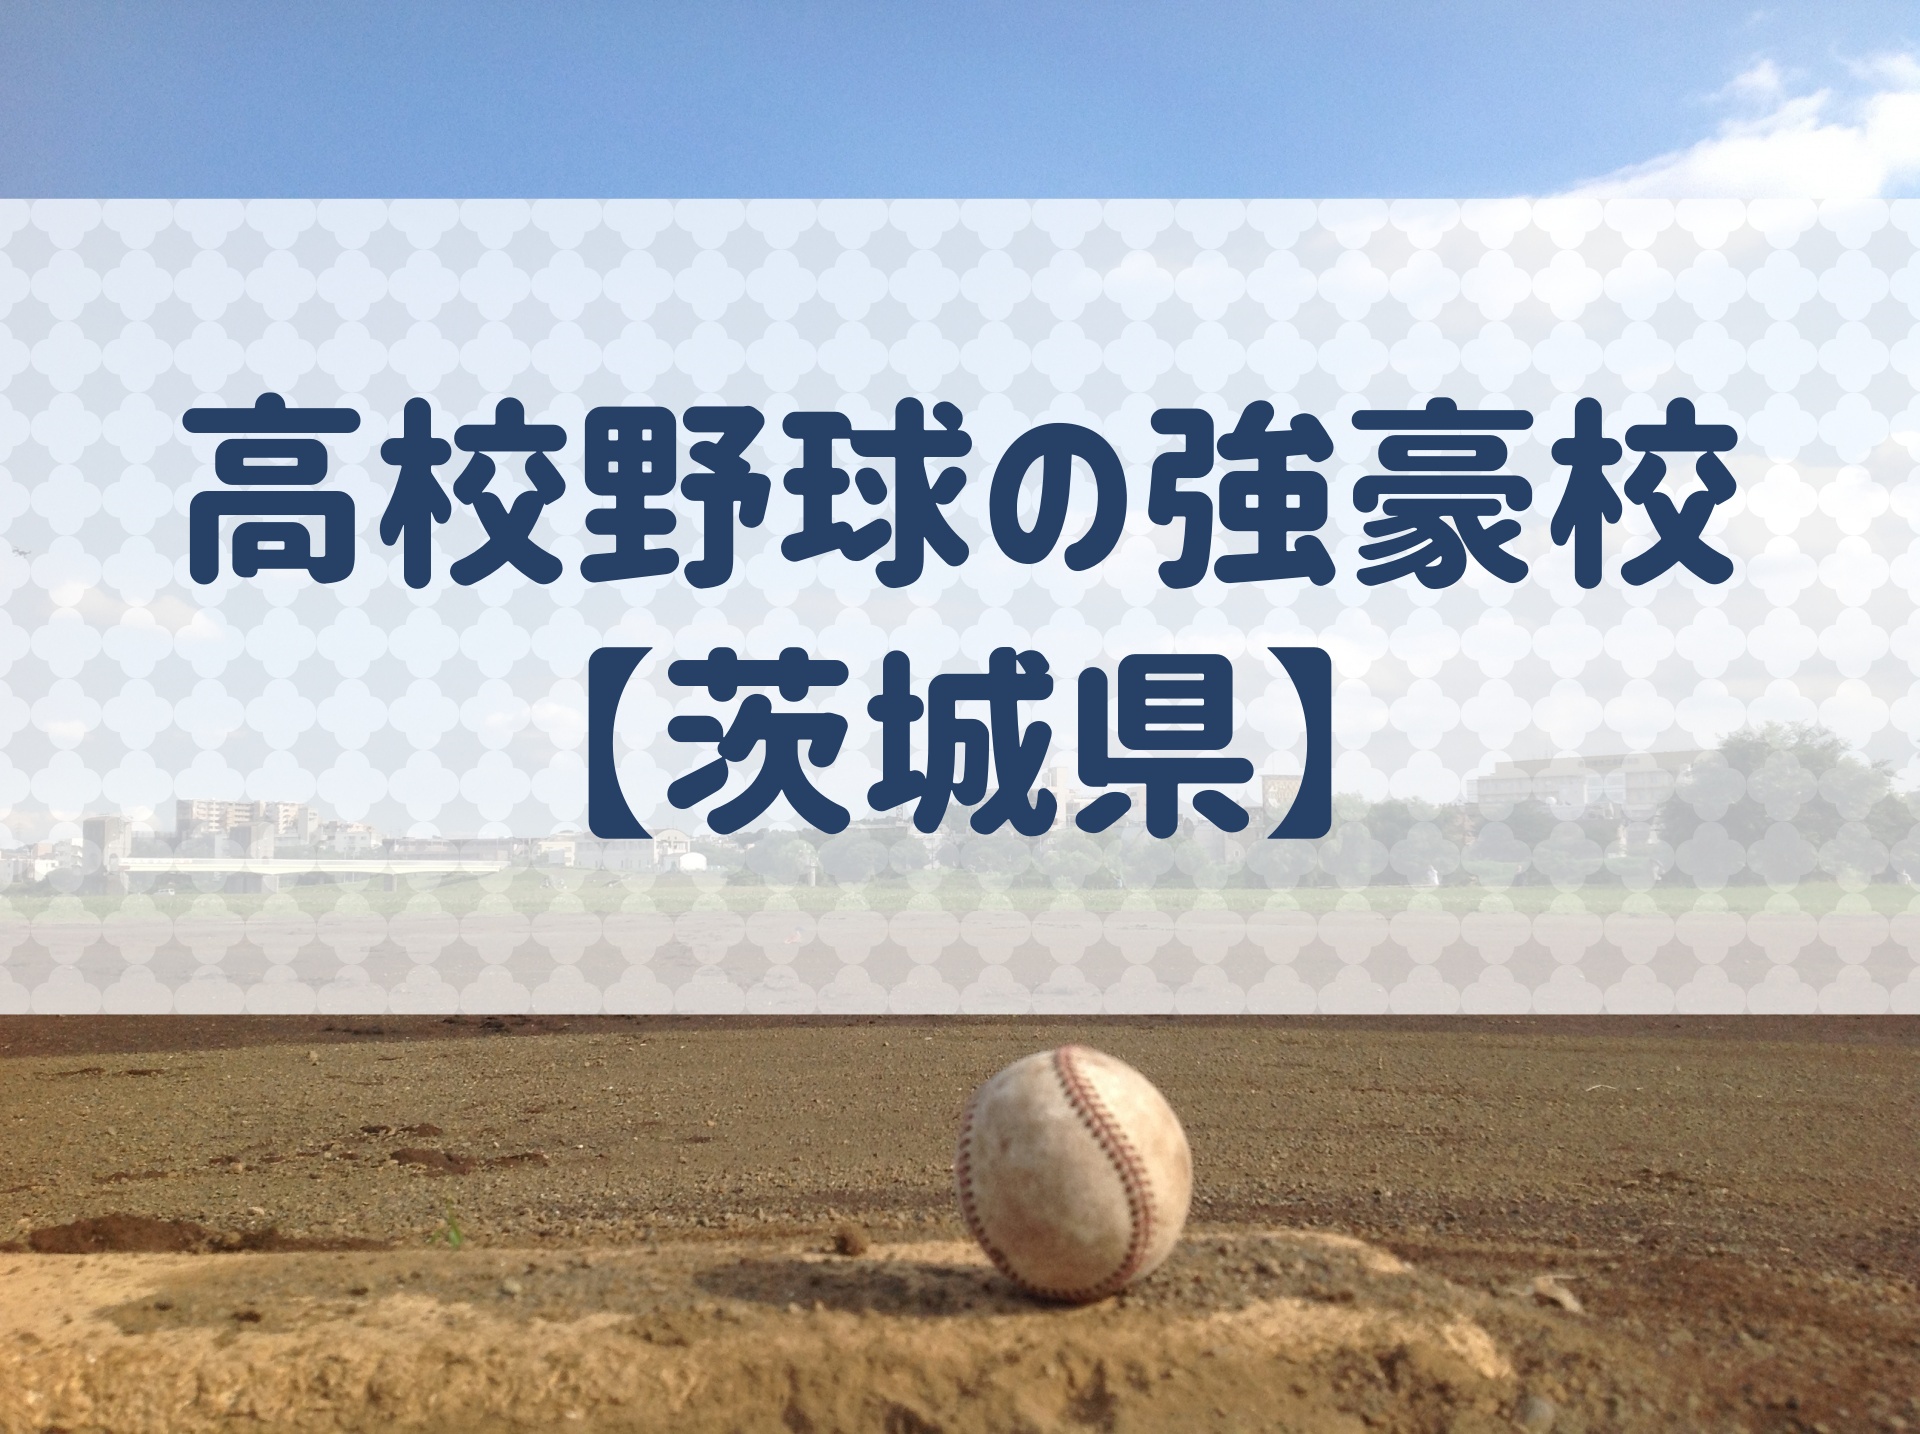 茨城県 高校野球の強豪校 特徴と実績などを紹介 野球用語 Net